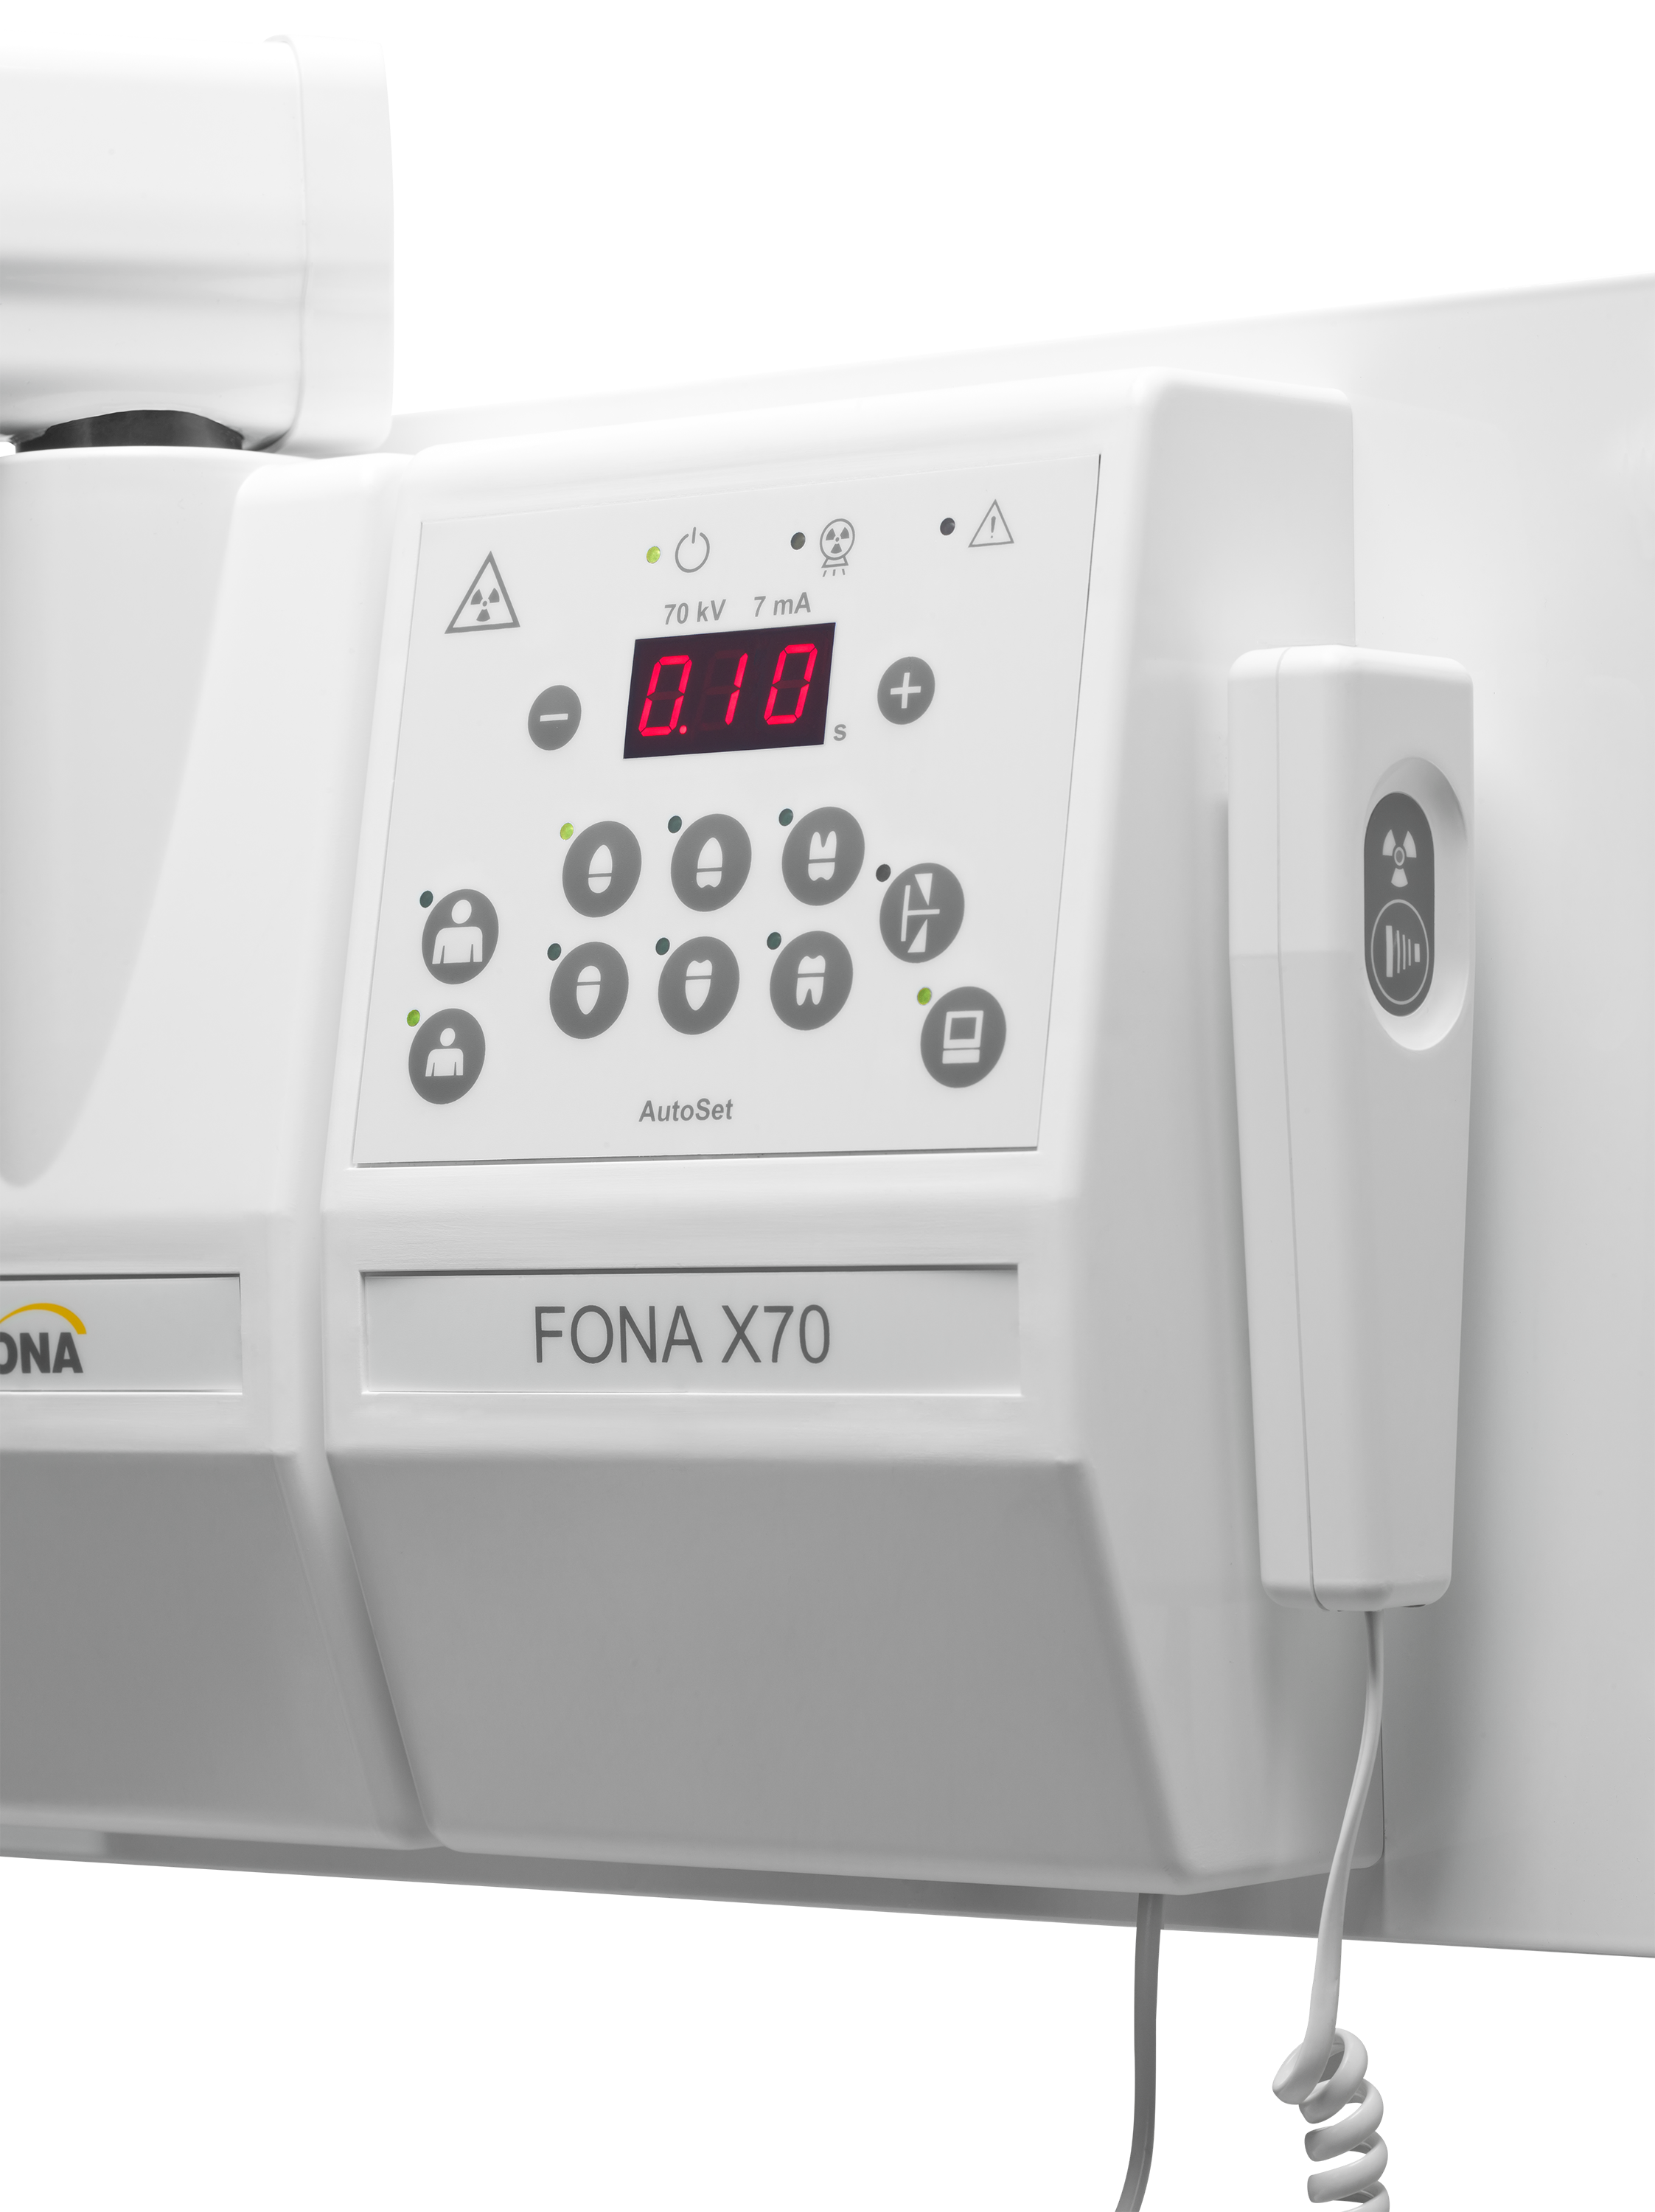 Рентген-аппарат FONA X70 - интраоральный настенный 0,8 мм, 7мА